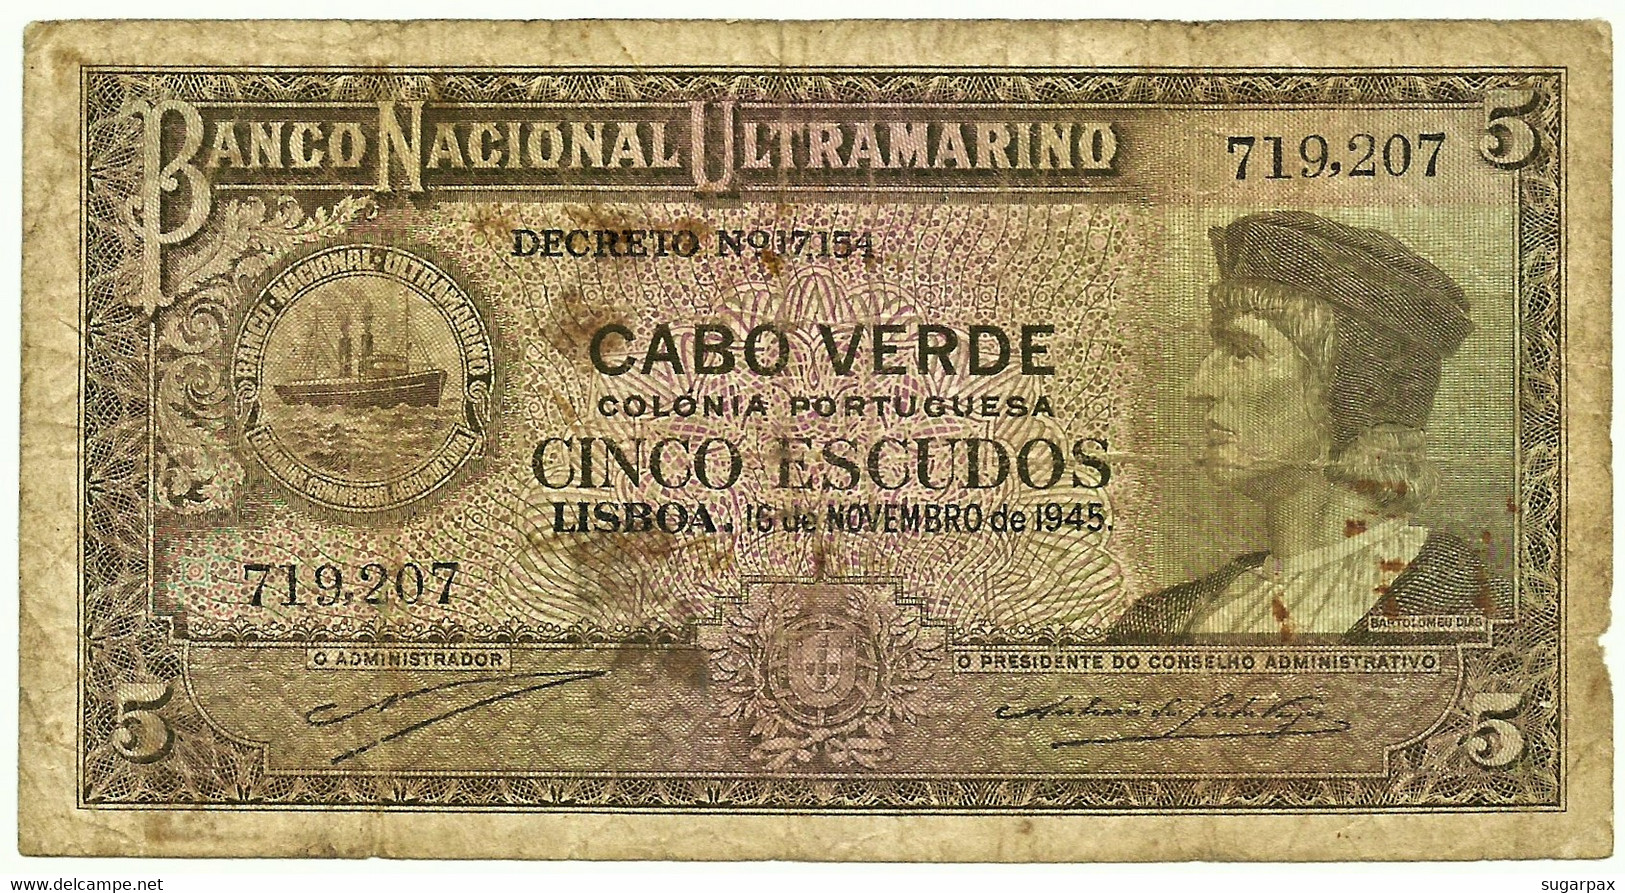 CAPE VERDE - 5 ESCUDOS - 15.11.1945 - Pick 41 - Bartolomeu Dias - Capo Verde